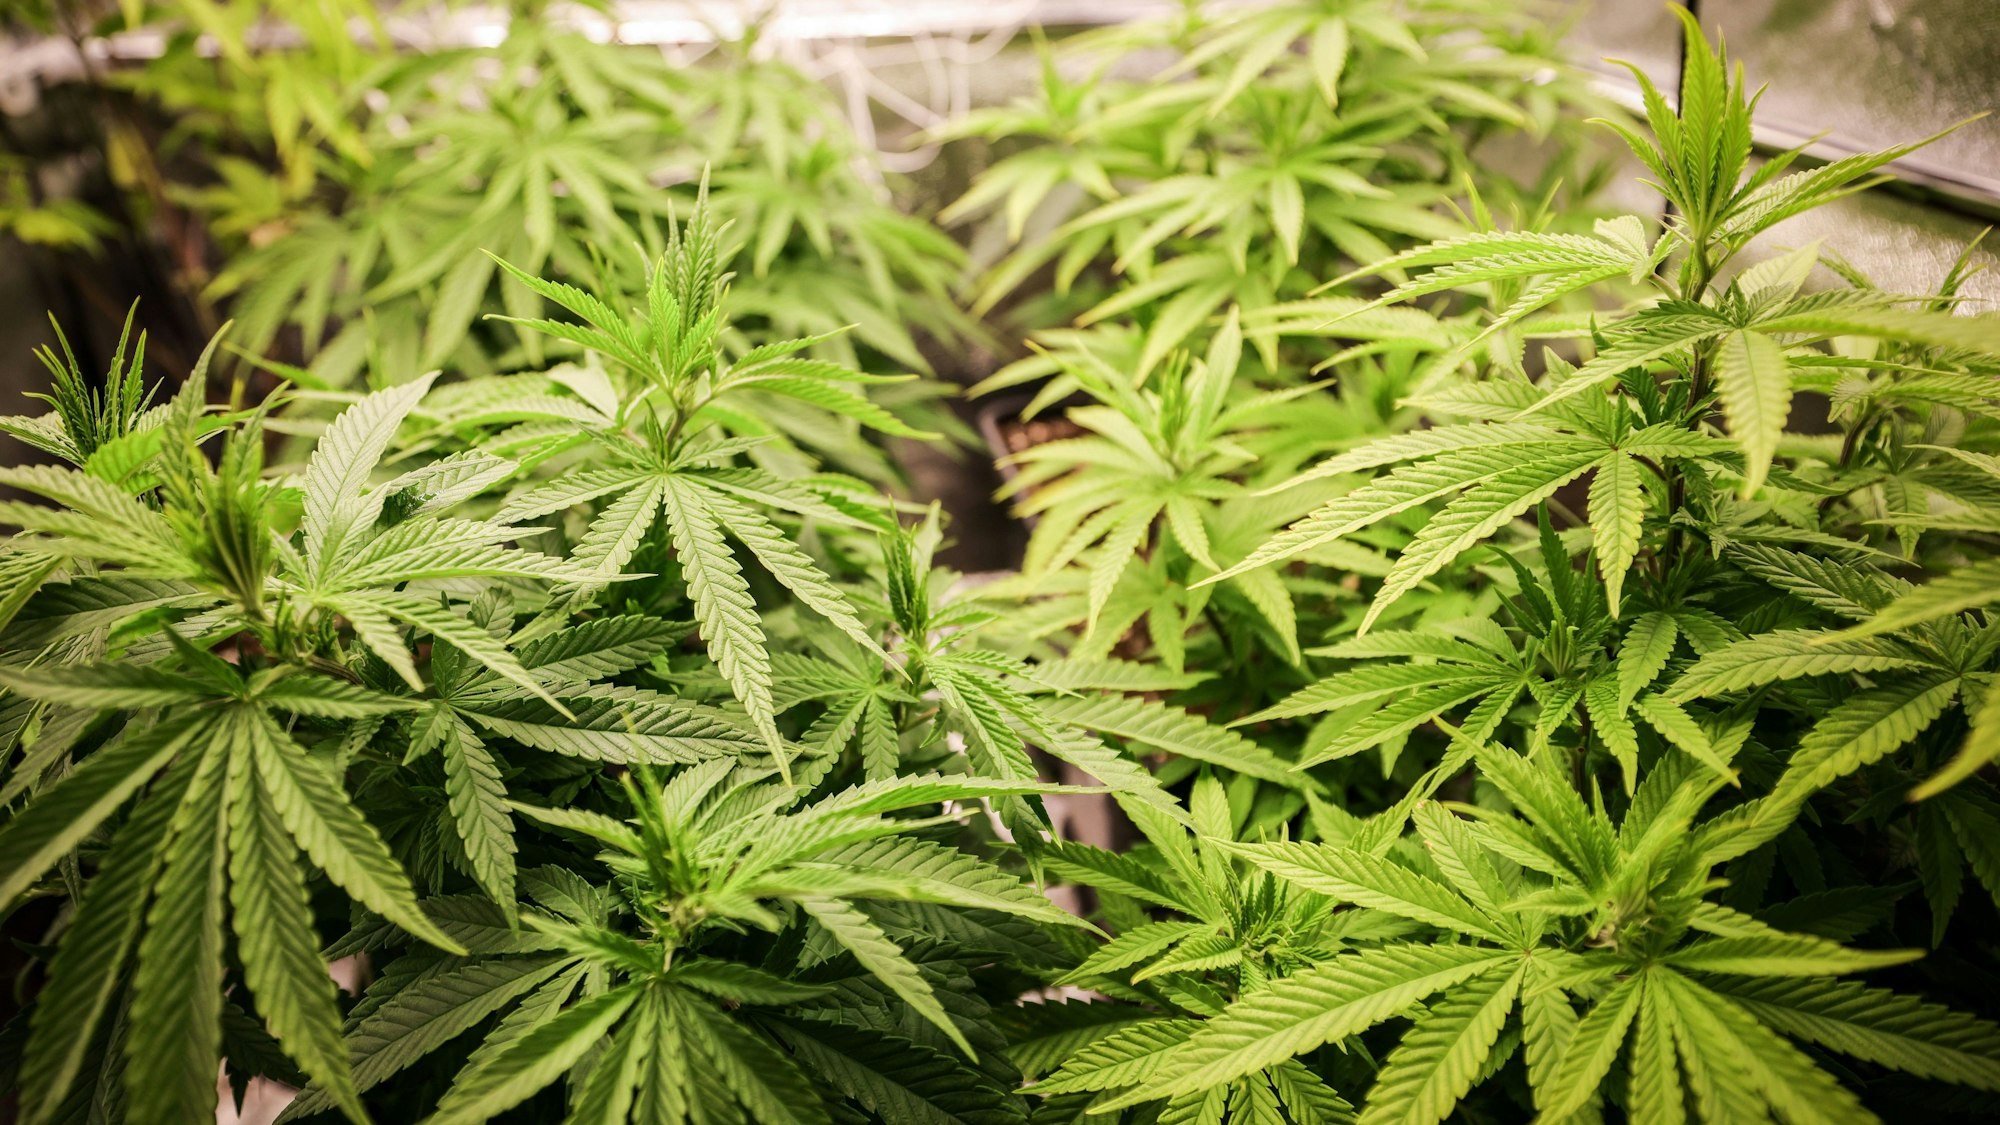 Das Bild zeigt Cannabispflanzen in ihrer Wachstumsphase.